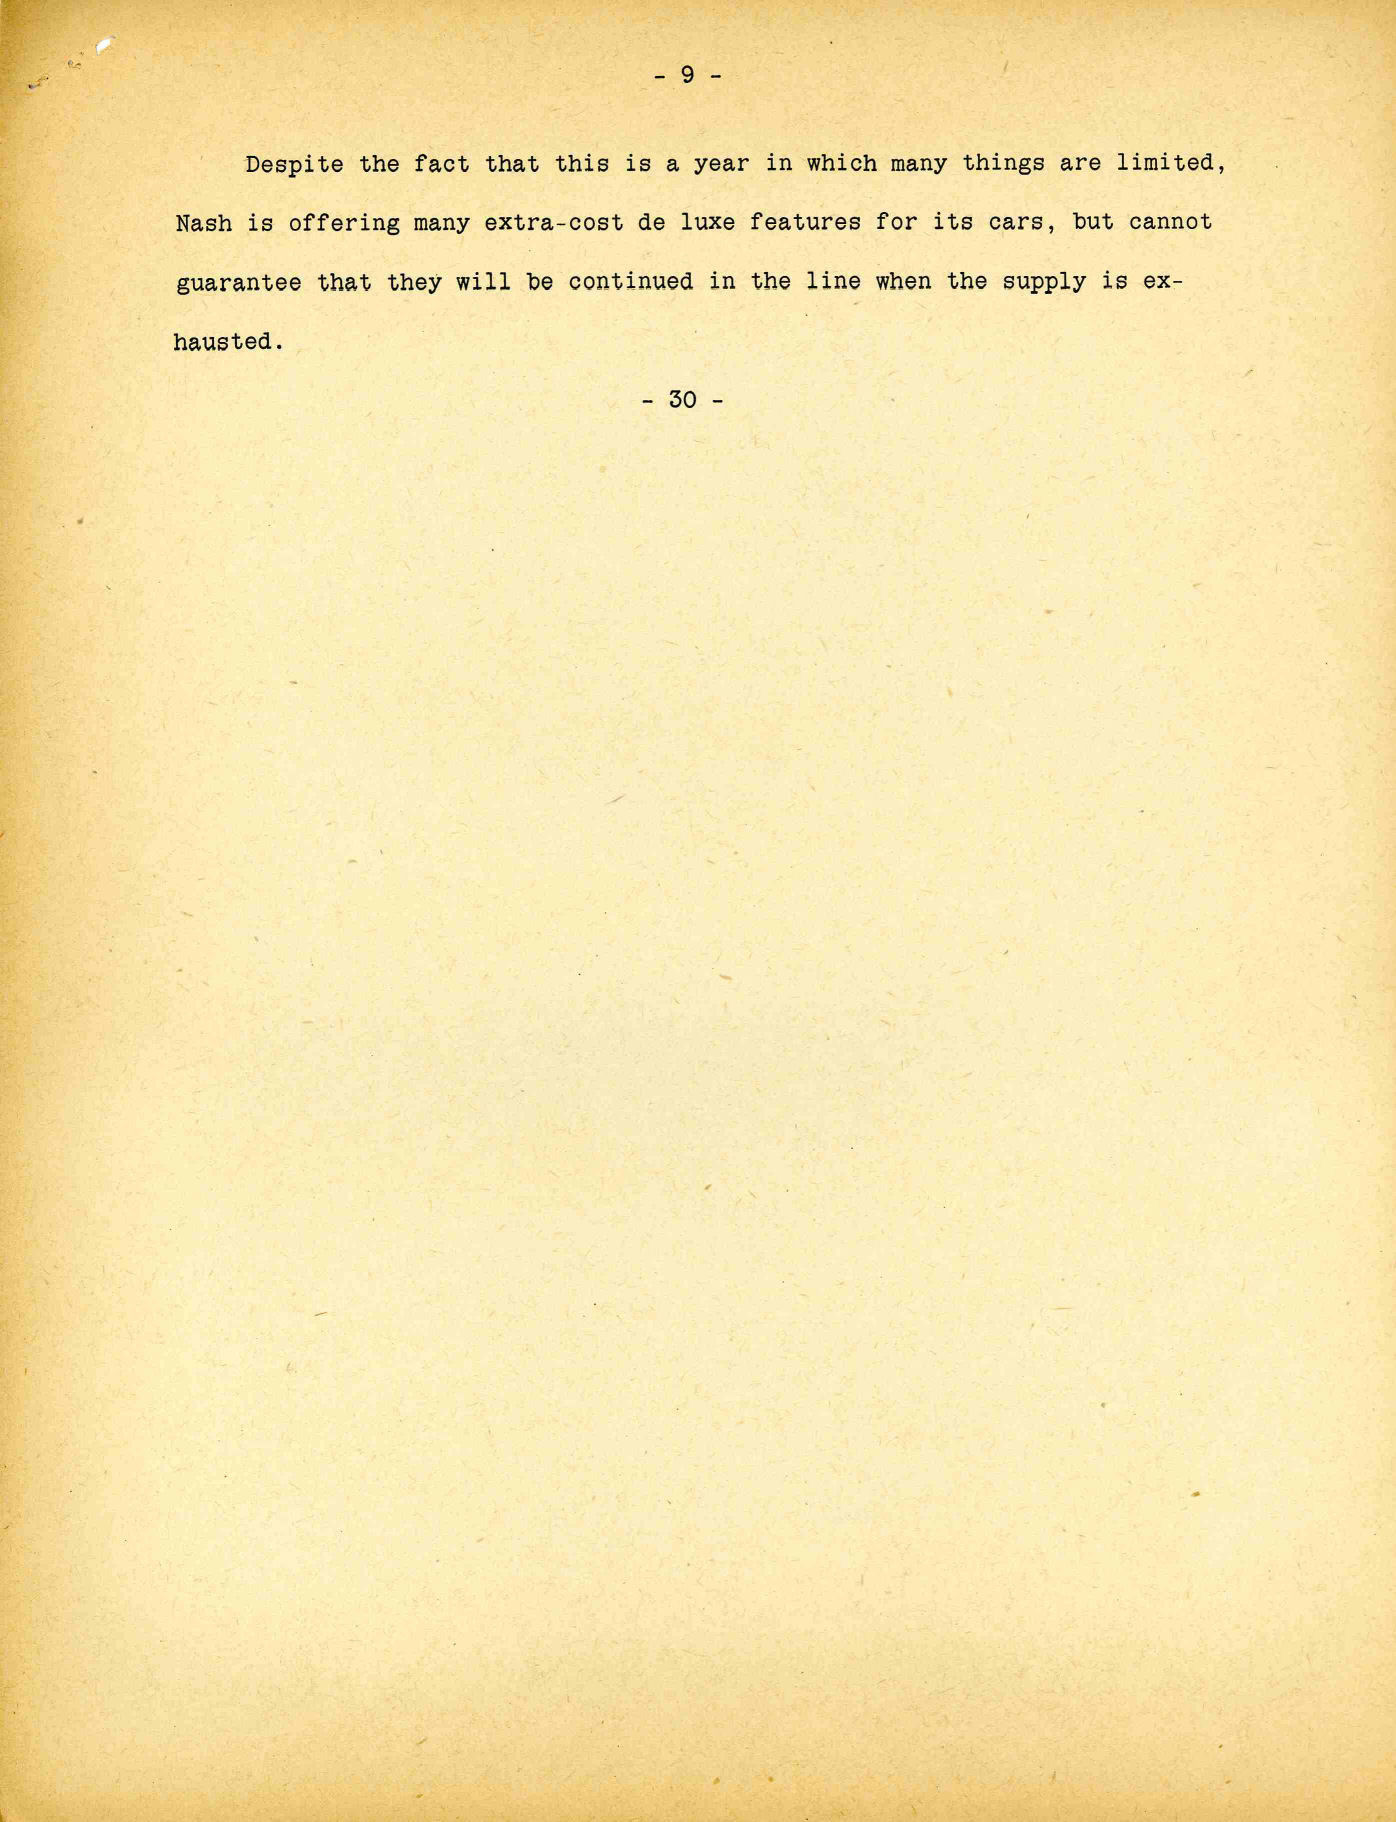 1942 Nash Press Kit Page 1